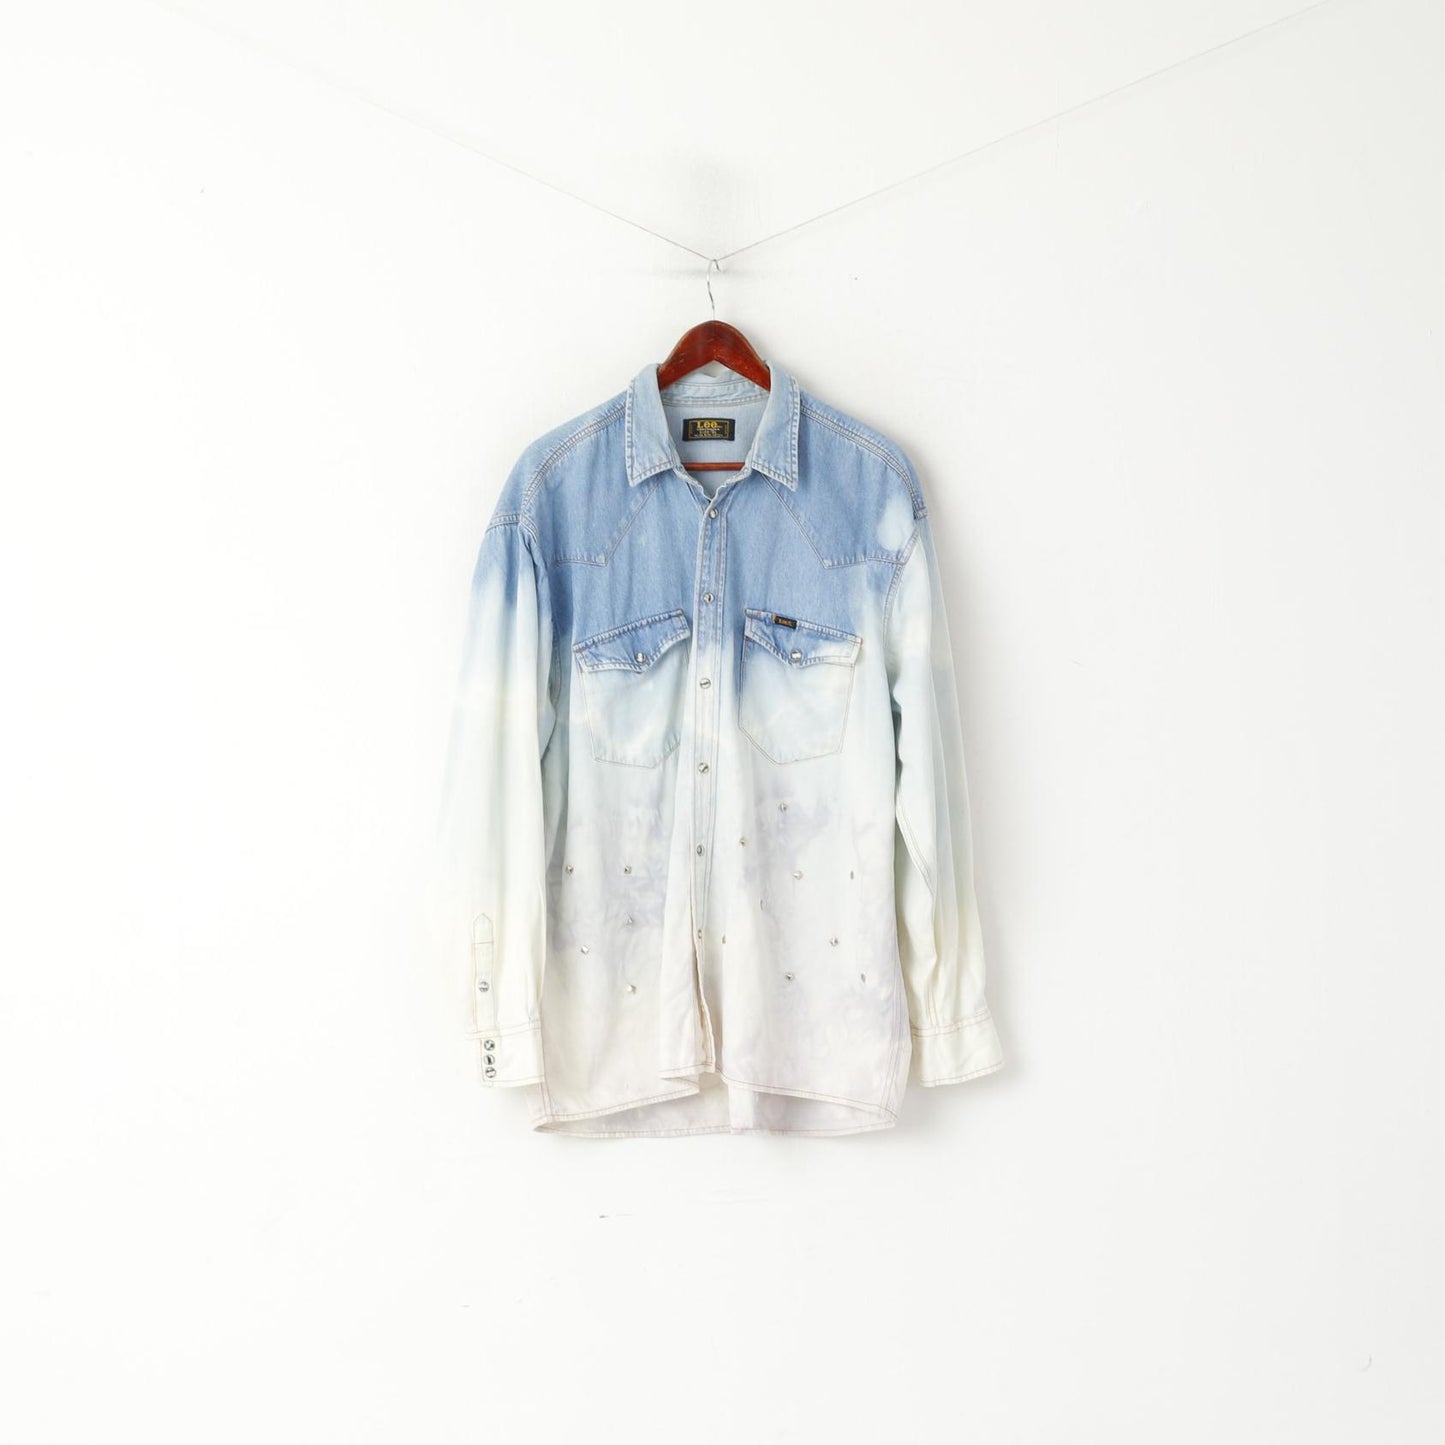 Lee Sanforized Hommes XL Chemise décontractée Bleu Jeans Ombre Jets Acid Wash Western Top